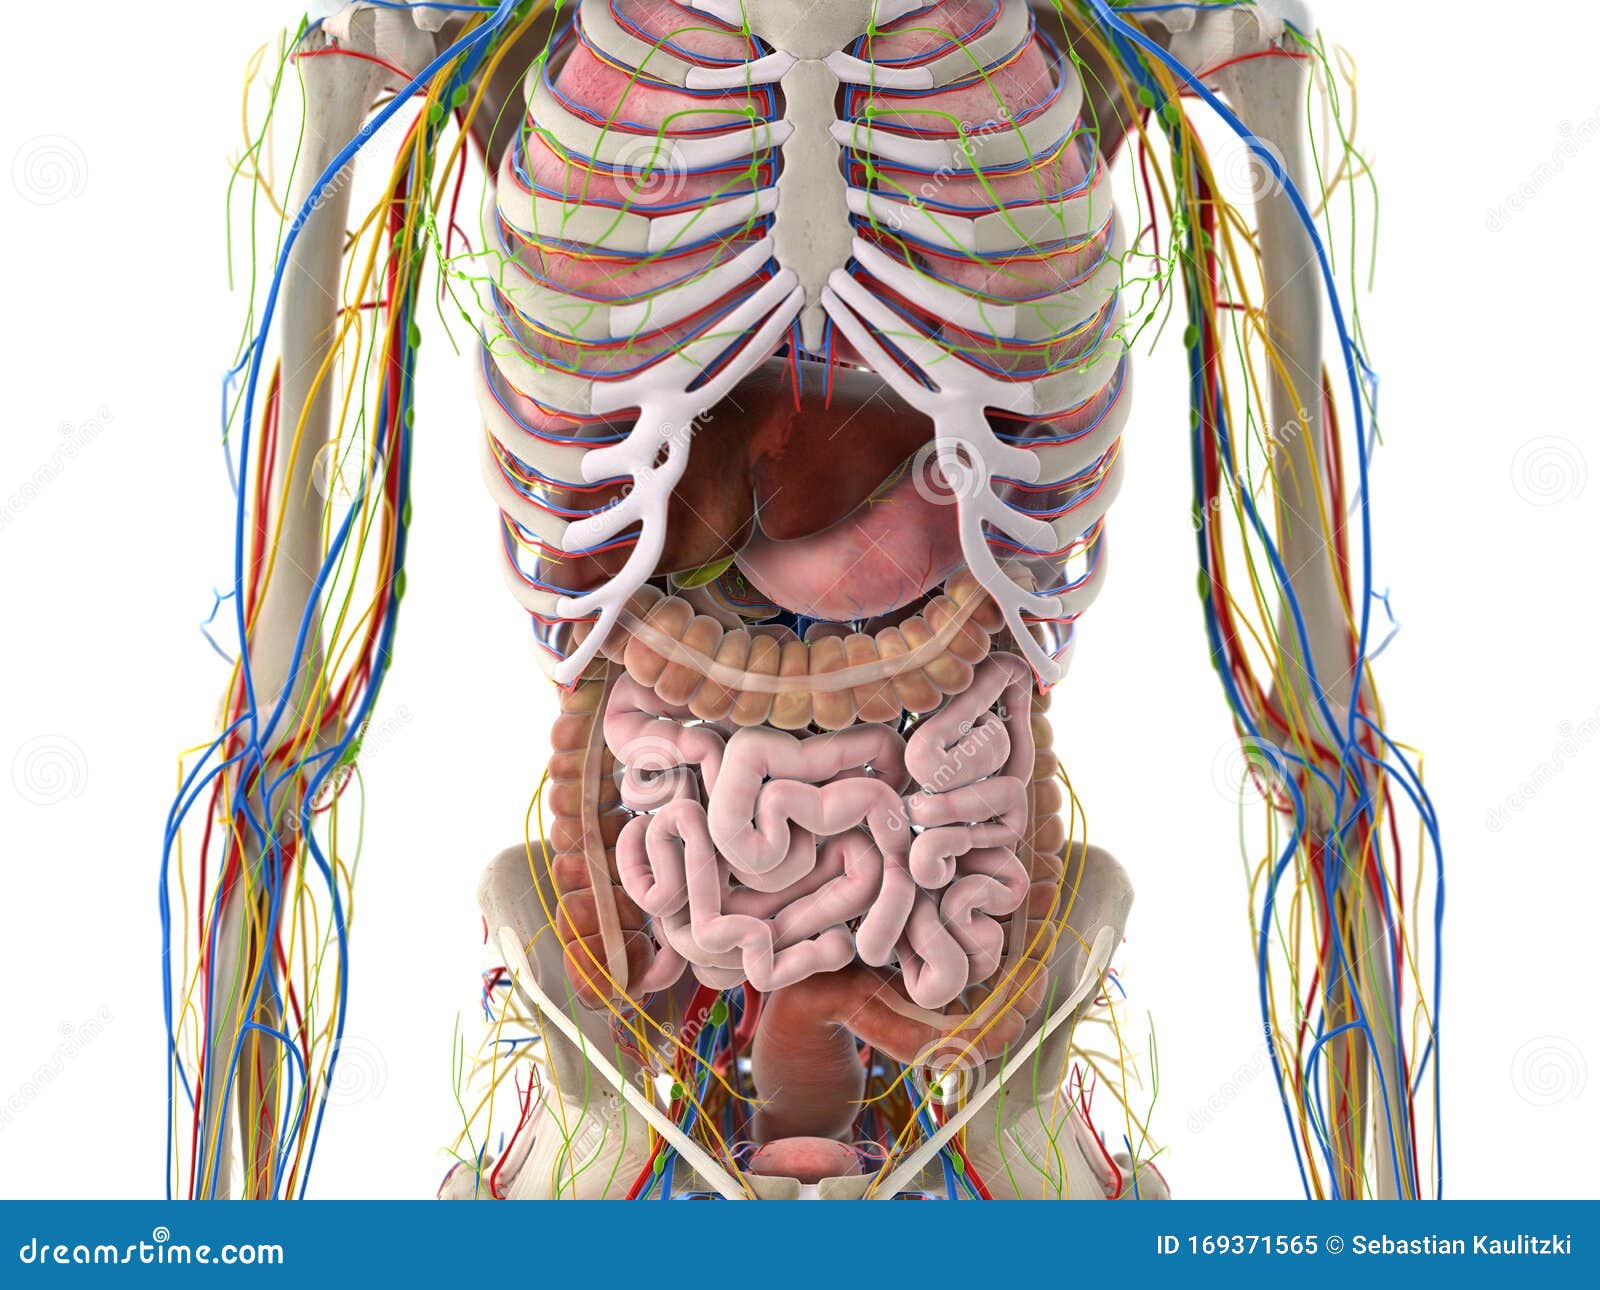 the abdominal organs